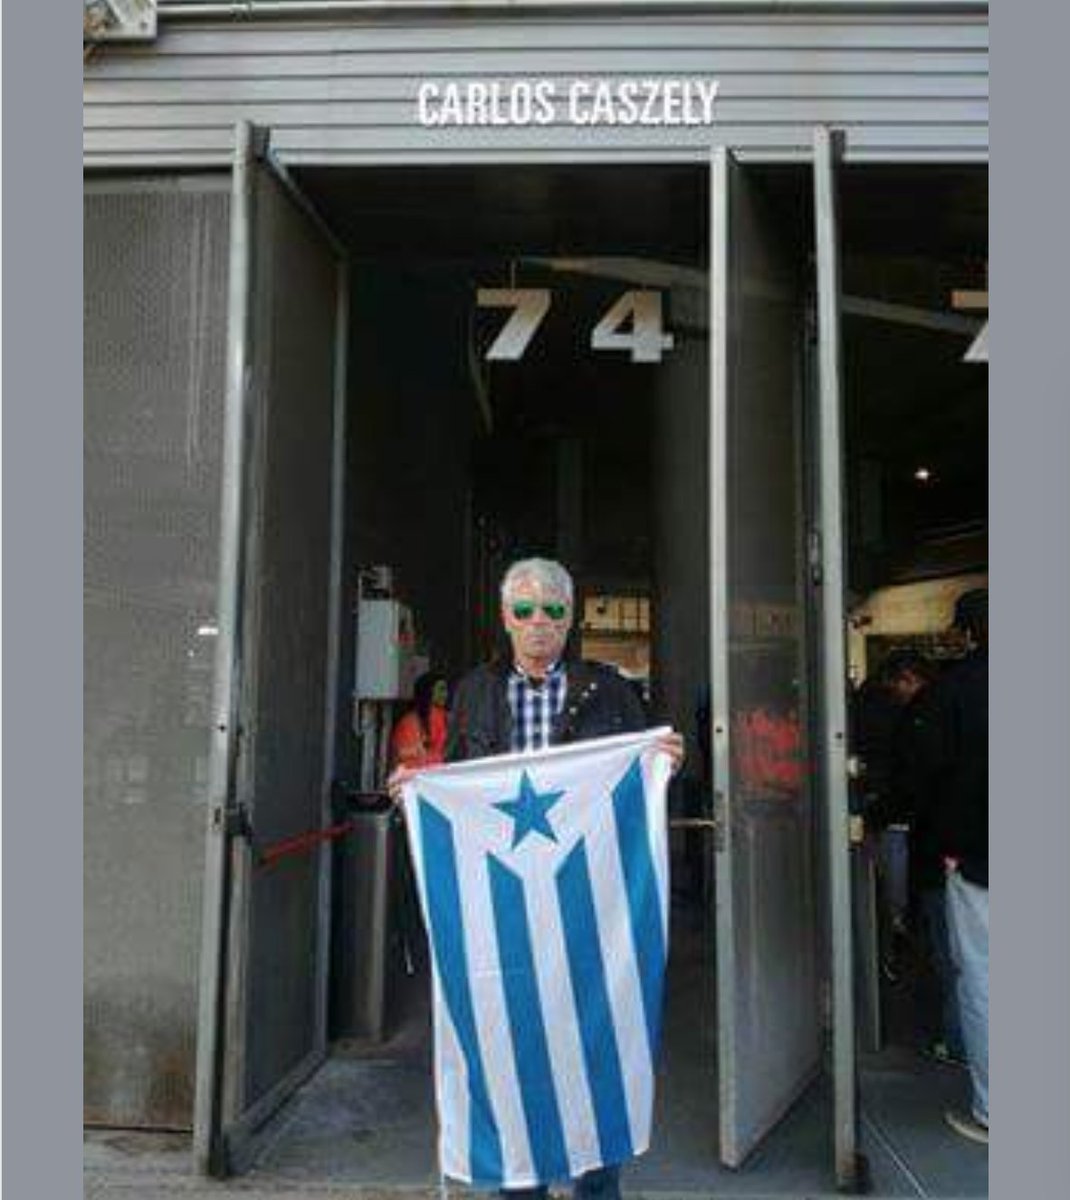 Puerta del  Estadio Cornellà-El Prat del club  Español de Barcelona @RCDEspanyol Puerta 74 #CARLOSCASZELY #Caszely #LosTenores #ColoColo